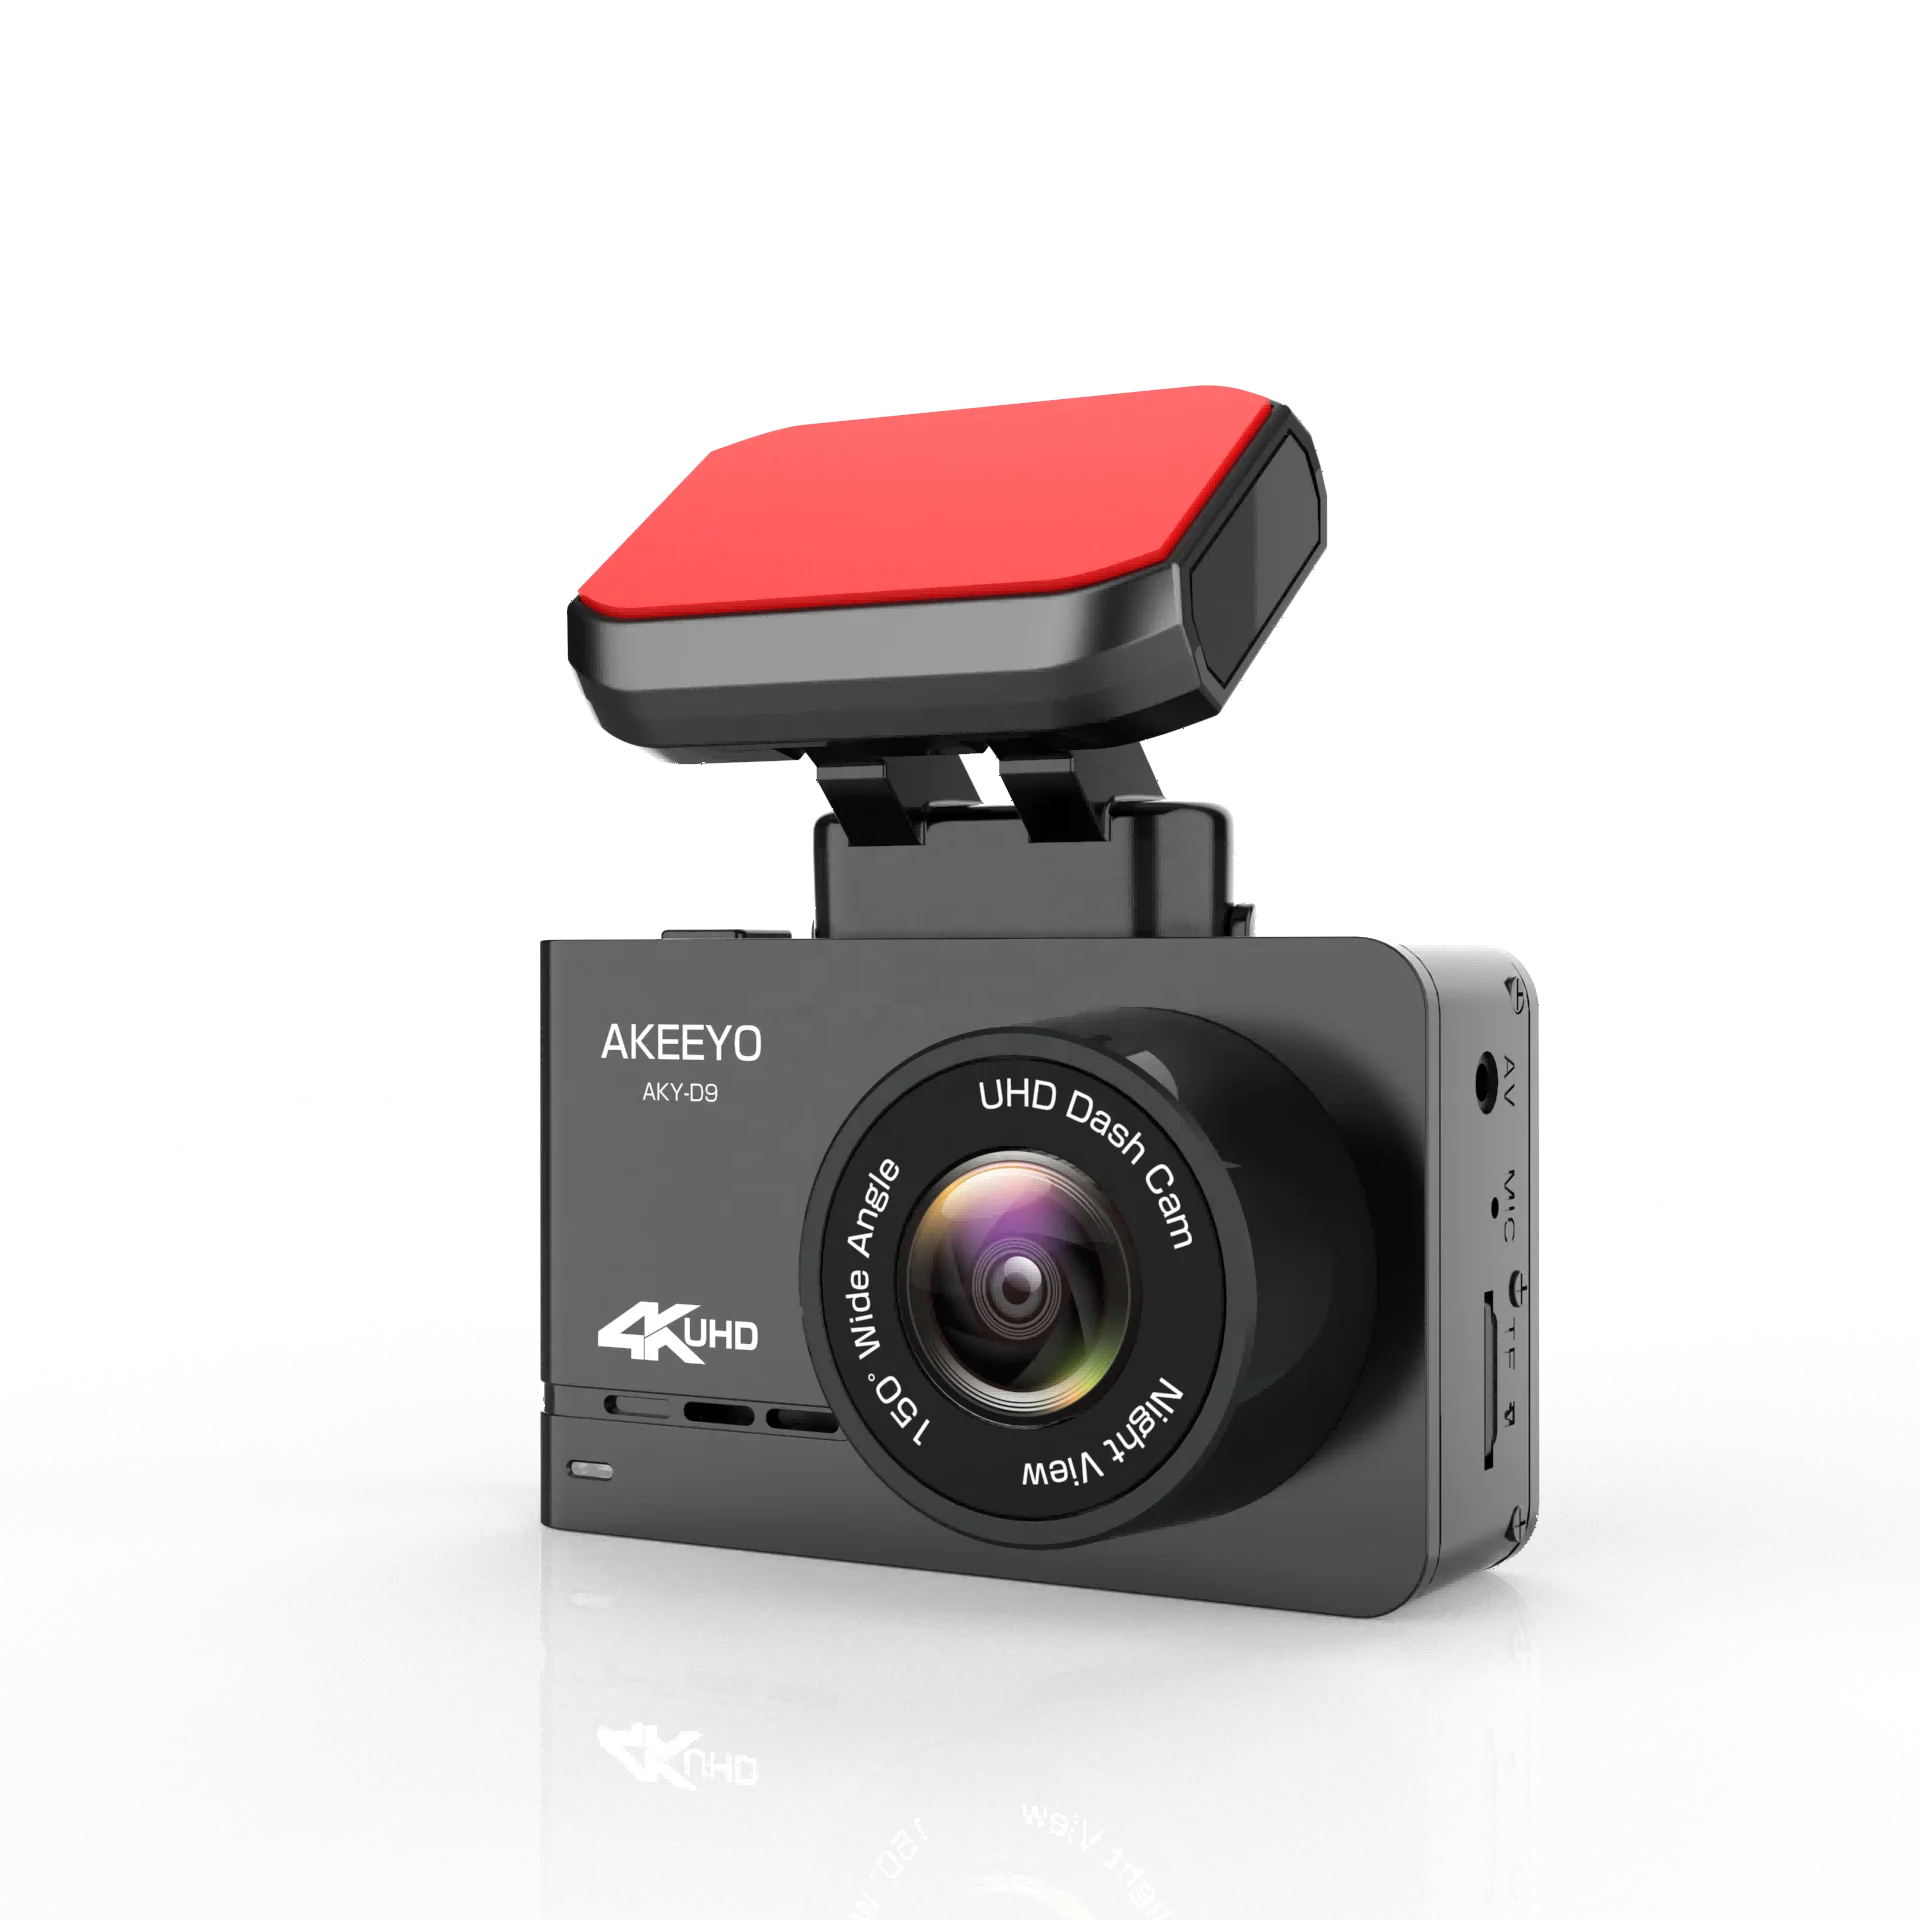 Çizgi Kam Çift Kamera Ön ve Arka Premium 4K 3840 * 2160 UHD WiFi GPS Araba kamera kayıt cihazı Gece Görüş WiFi Süper Kapasitör